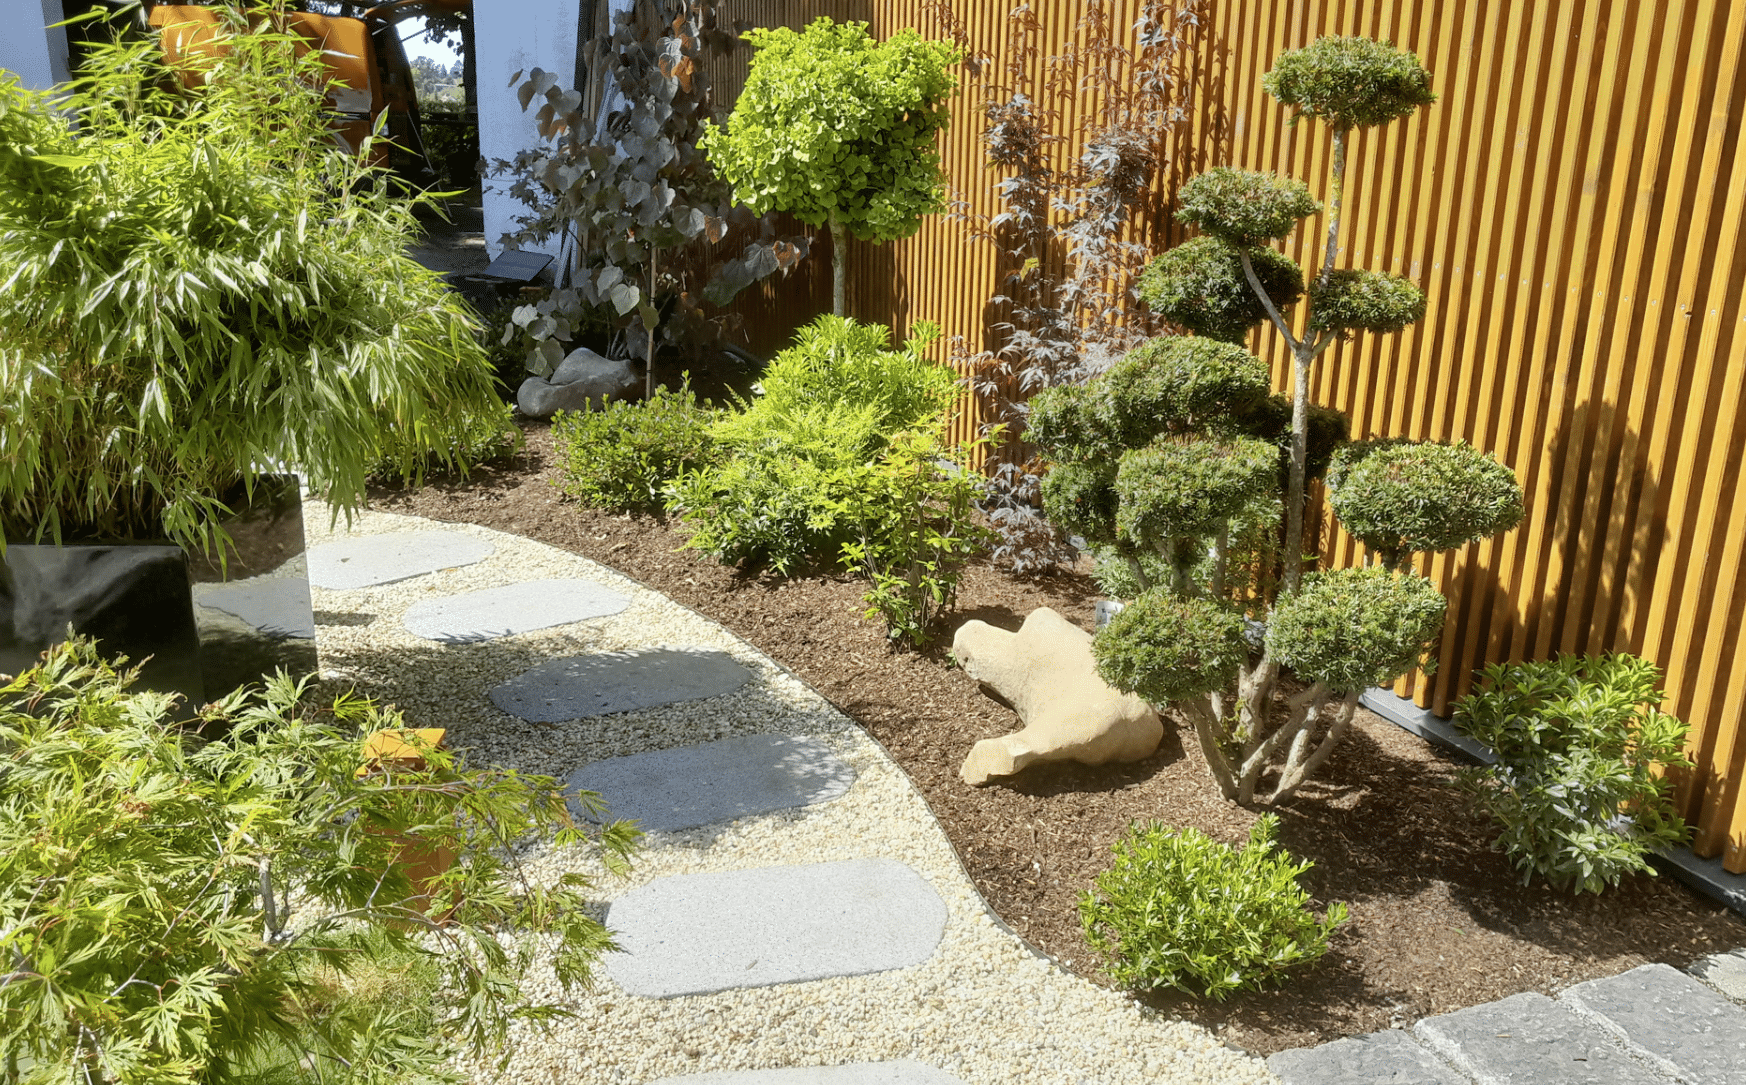 Gartenbau Schmid zeigt einen angelegten Weg mit verschiedenen Pflanzen und kleinen Bäumen an den Seiten.